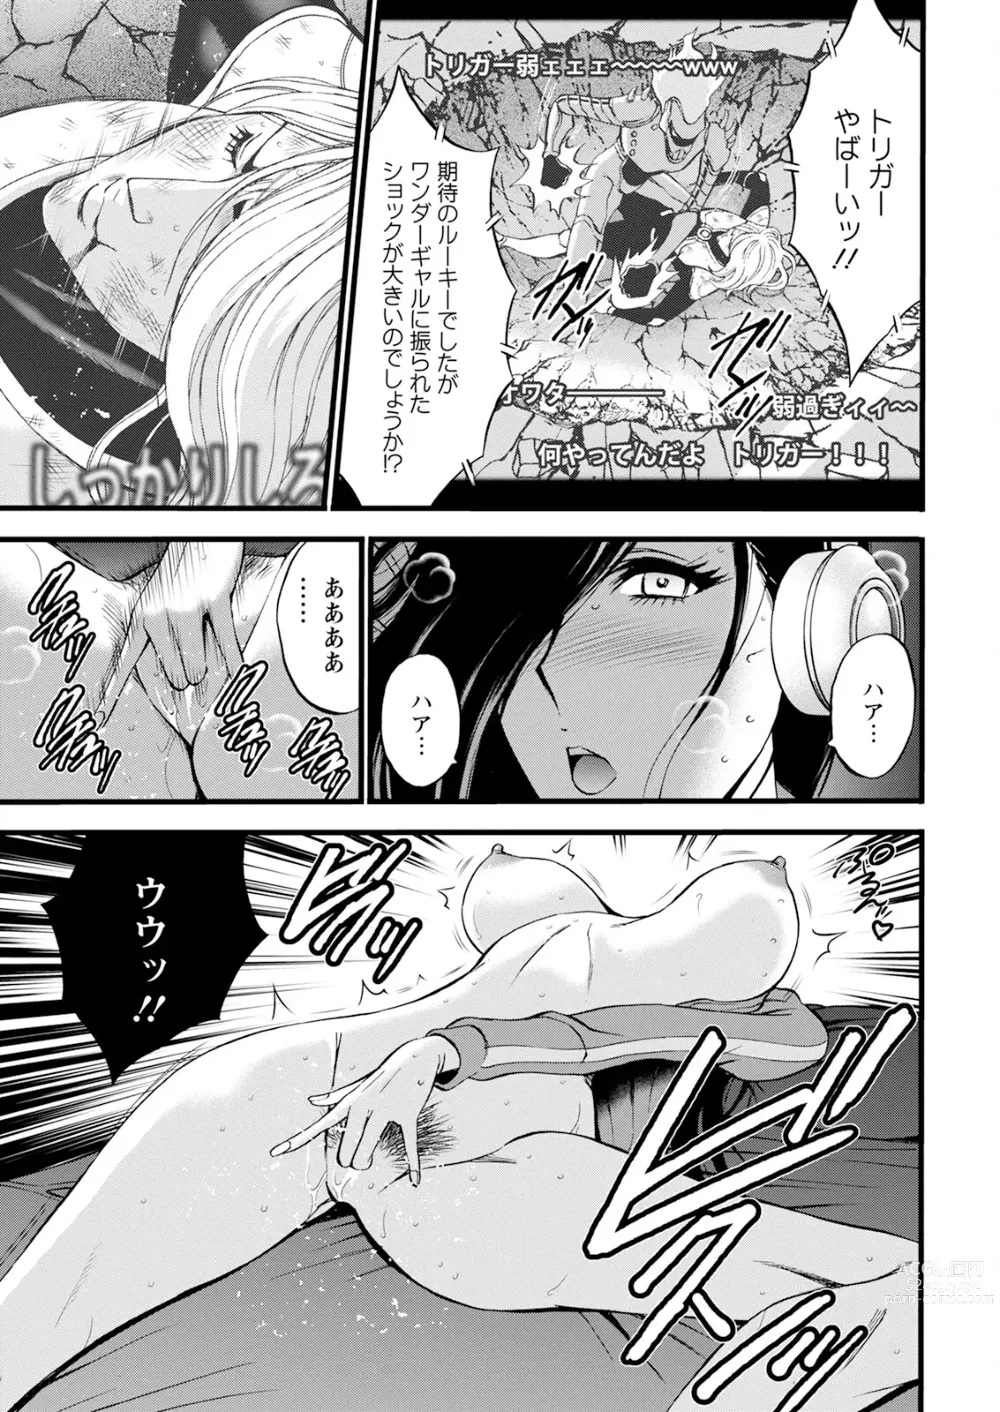 Page 9 of manga Action Pizazz 2023-12